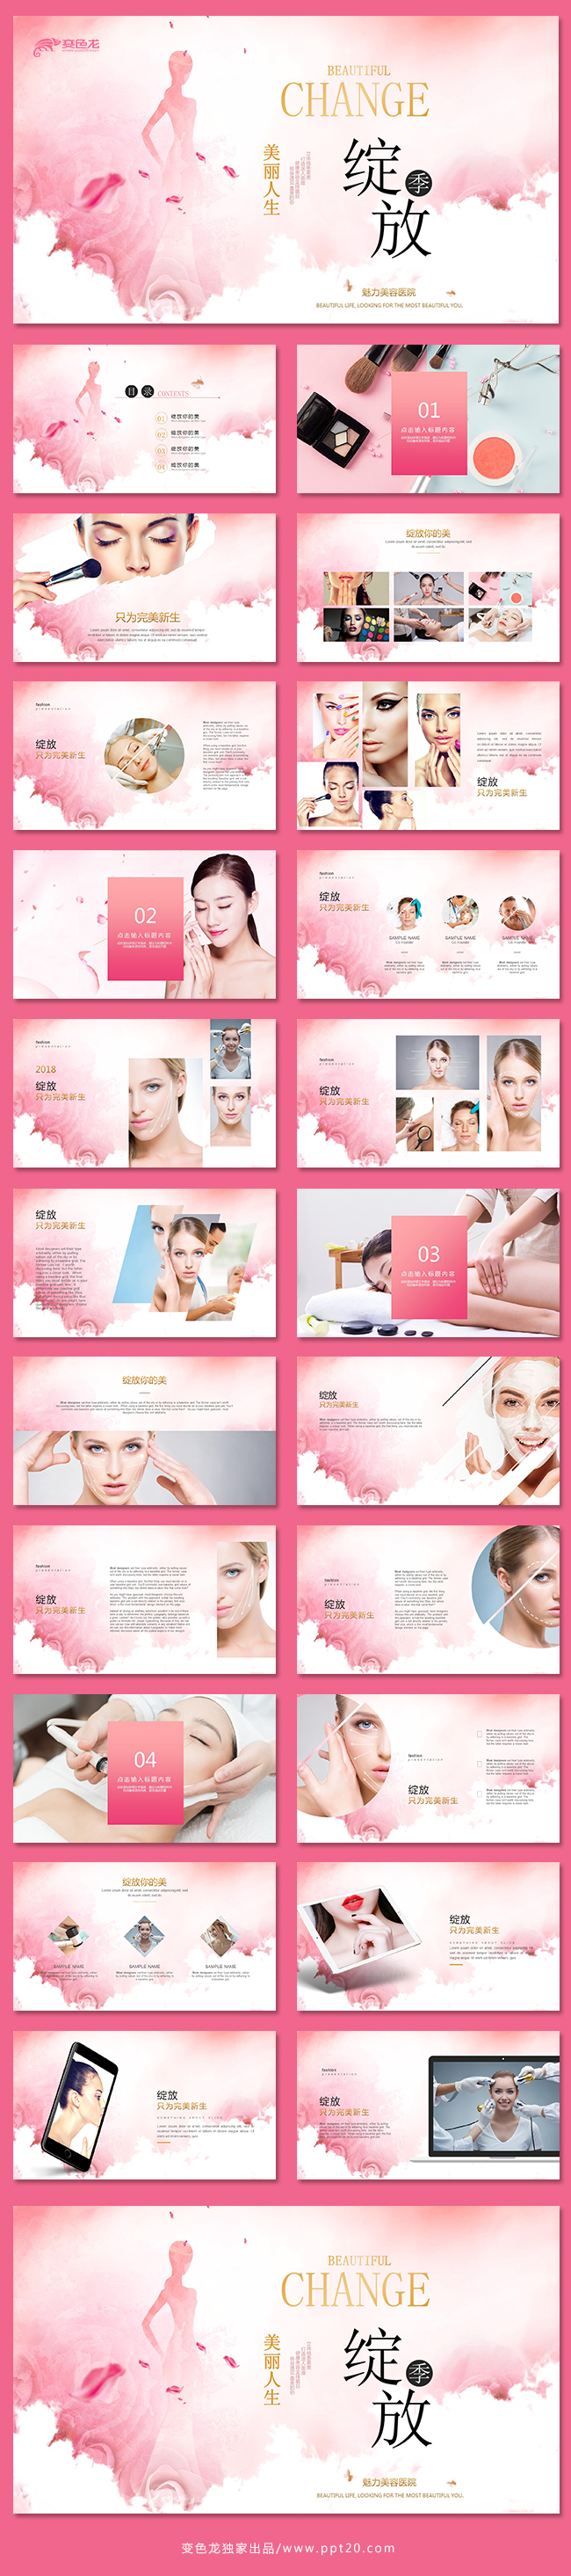 粉色美容宣传美容护肤化妆美白整形整形广告瘦身美体减肥PPT